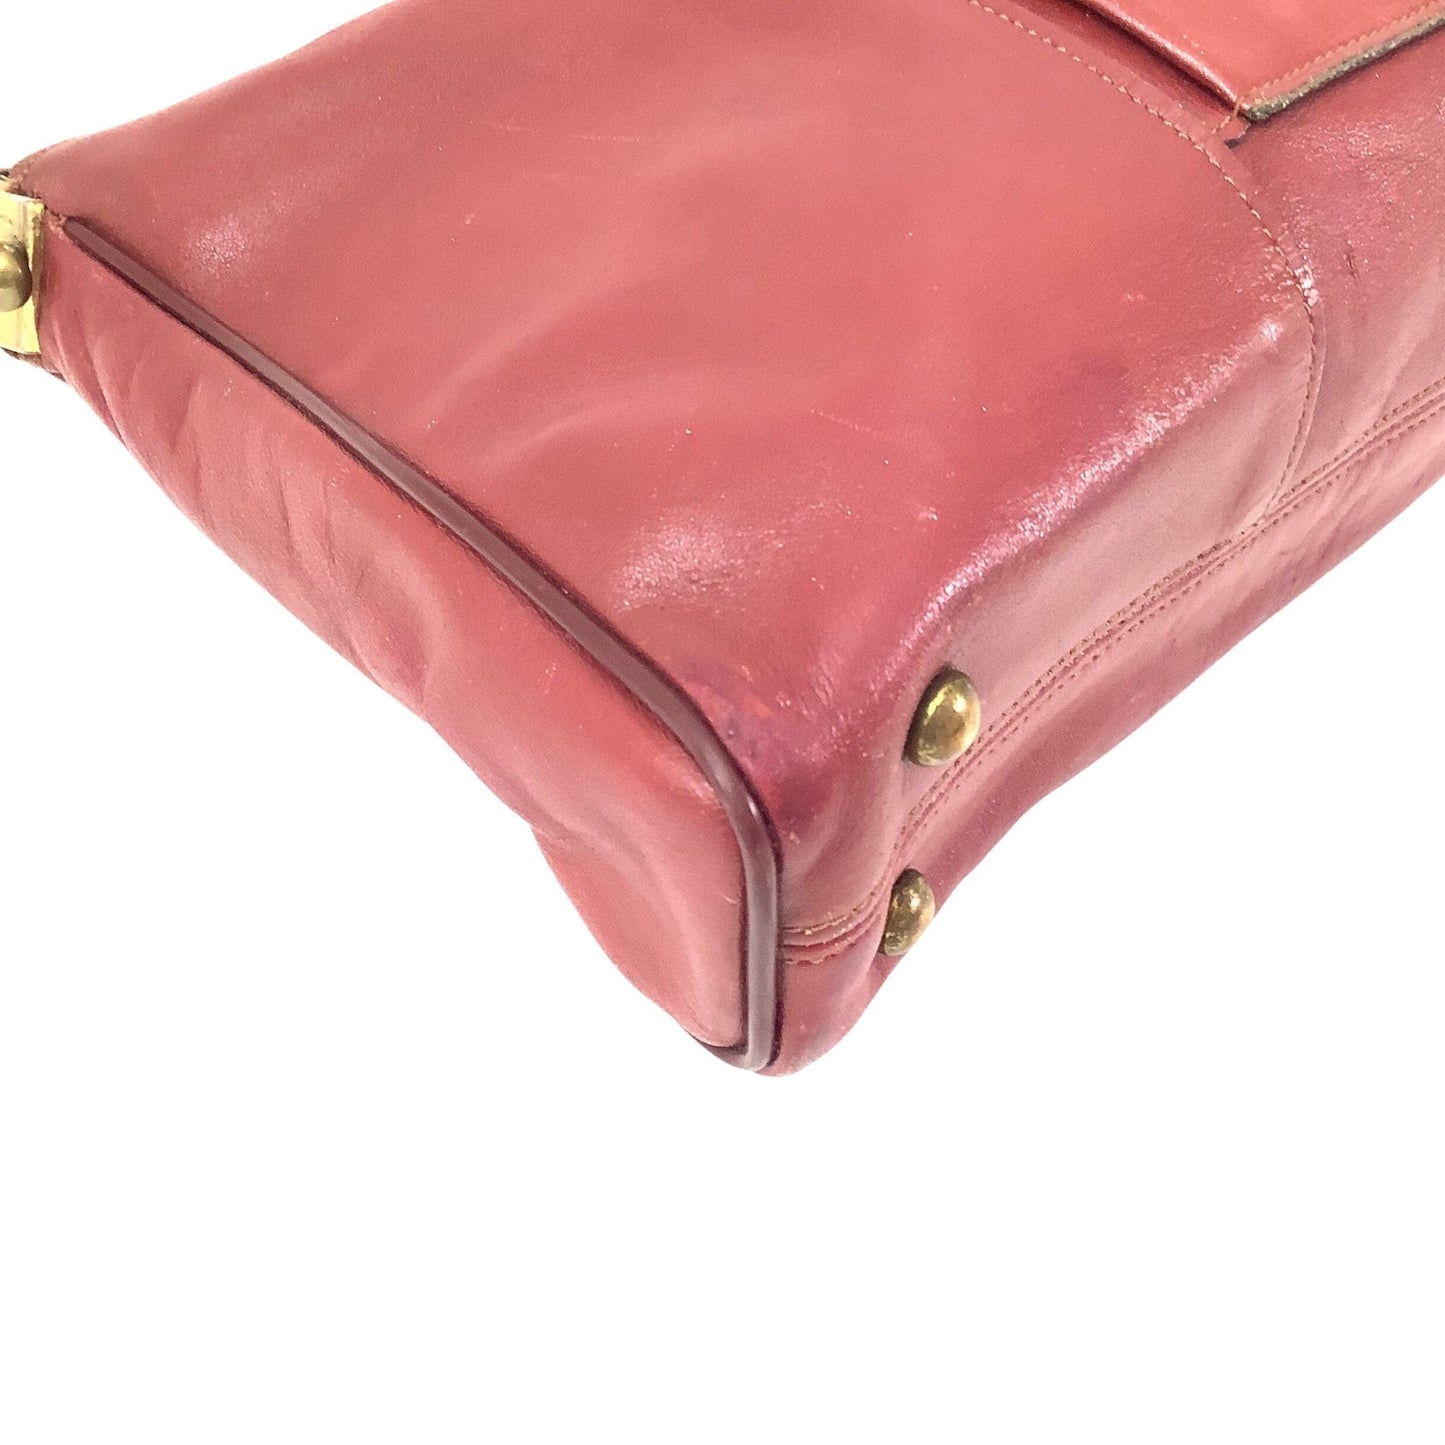 Etienne Aigner Leather Bag Burgundy / Leather / Vintage 1970s